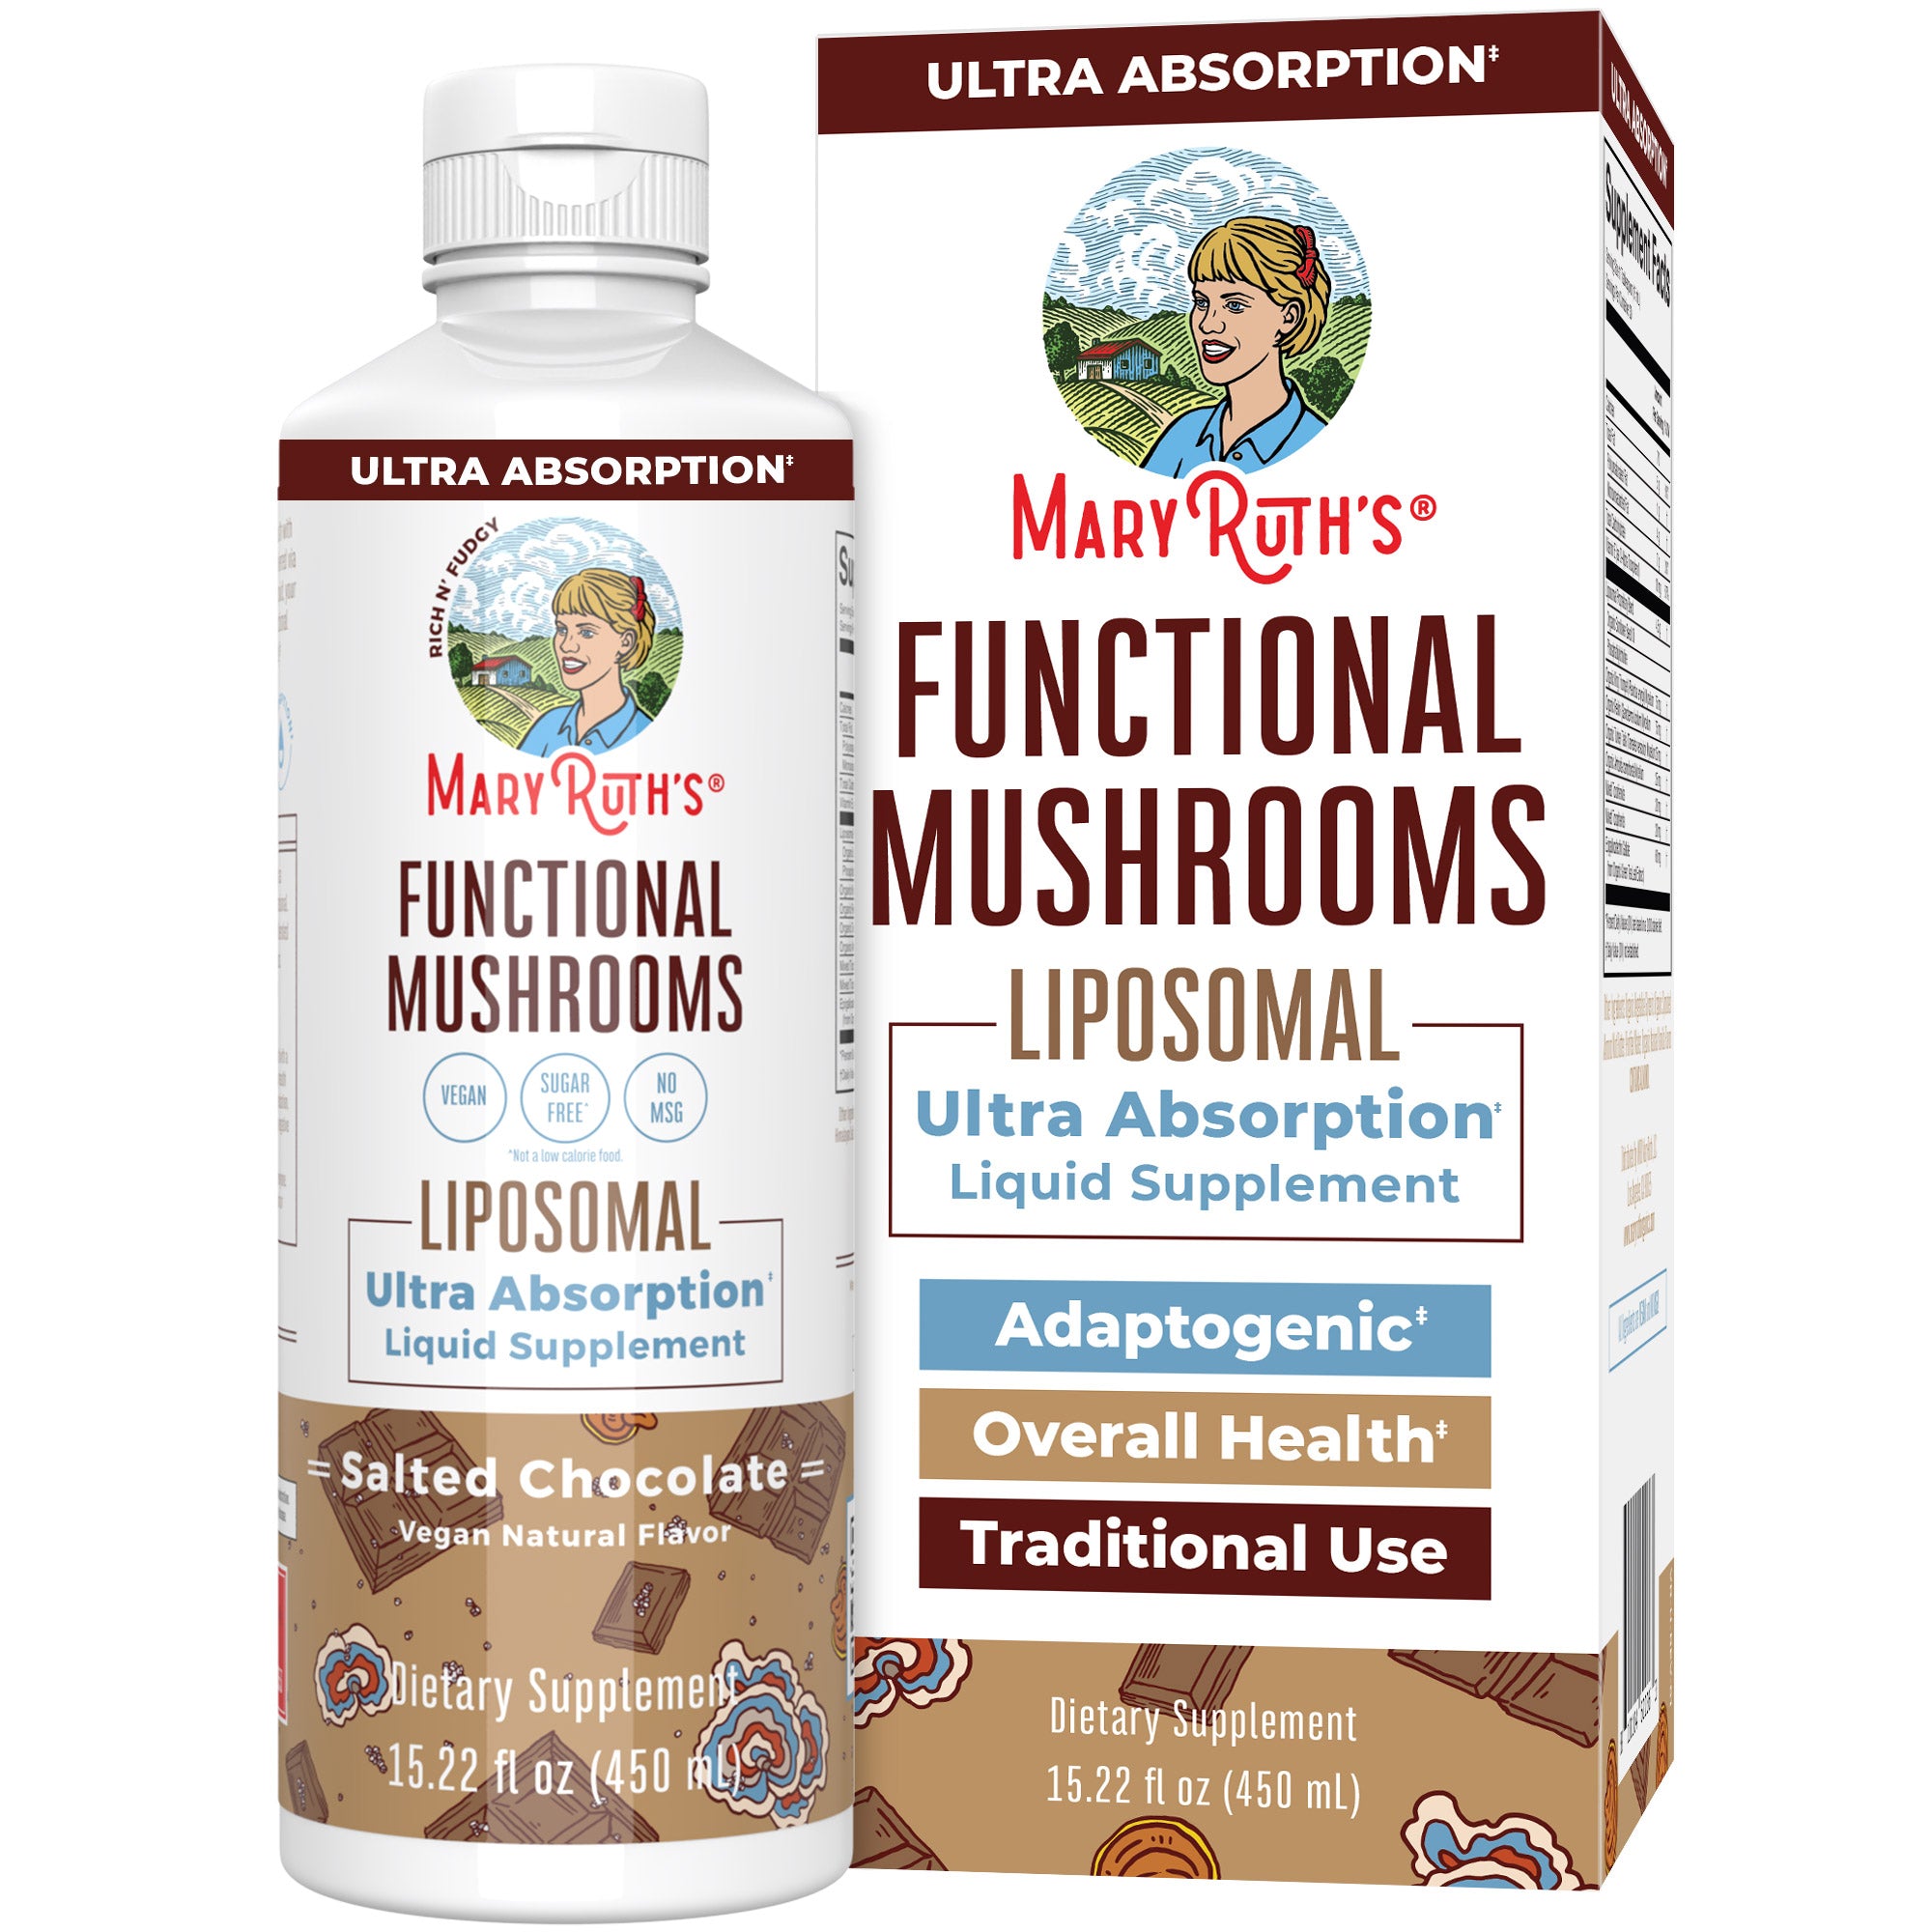 Functional Mushrooms Liposomal